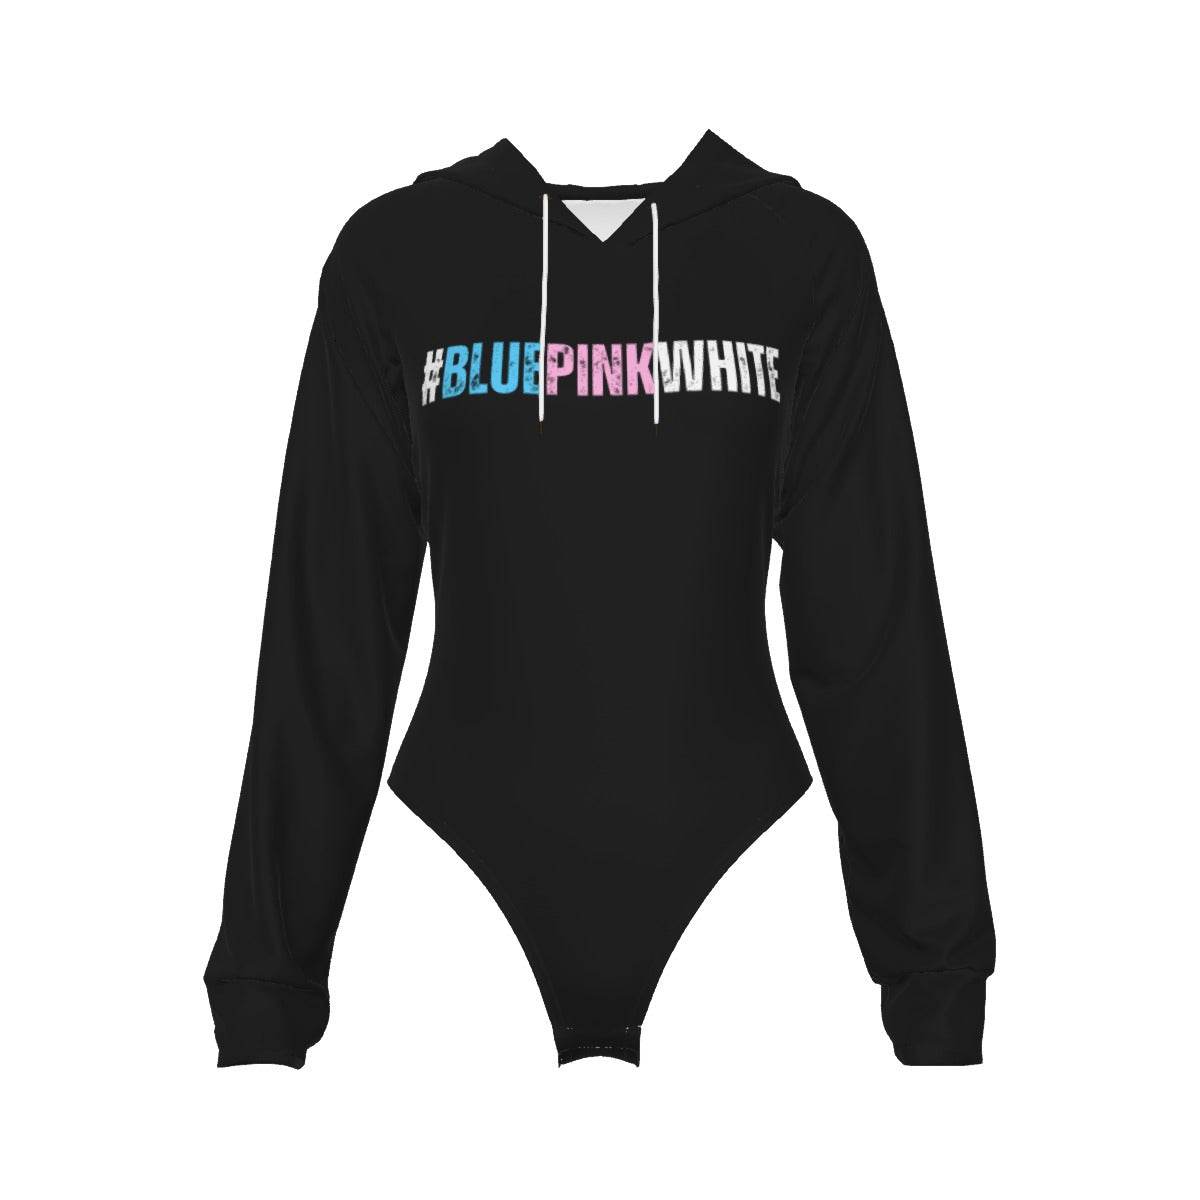 Teen #BLUEPINKWHITE hashtag Hooded Bodysuit